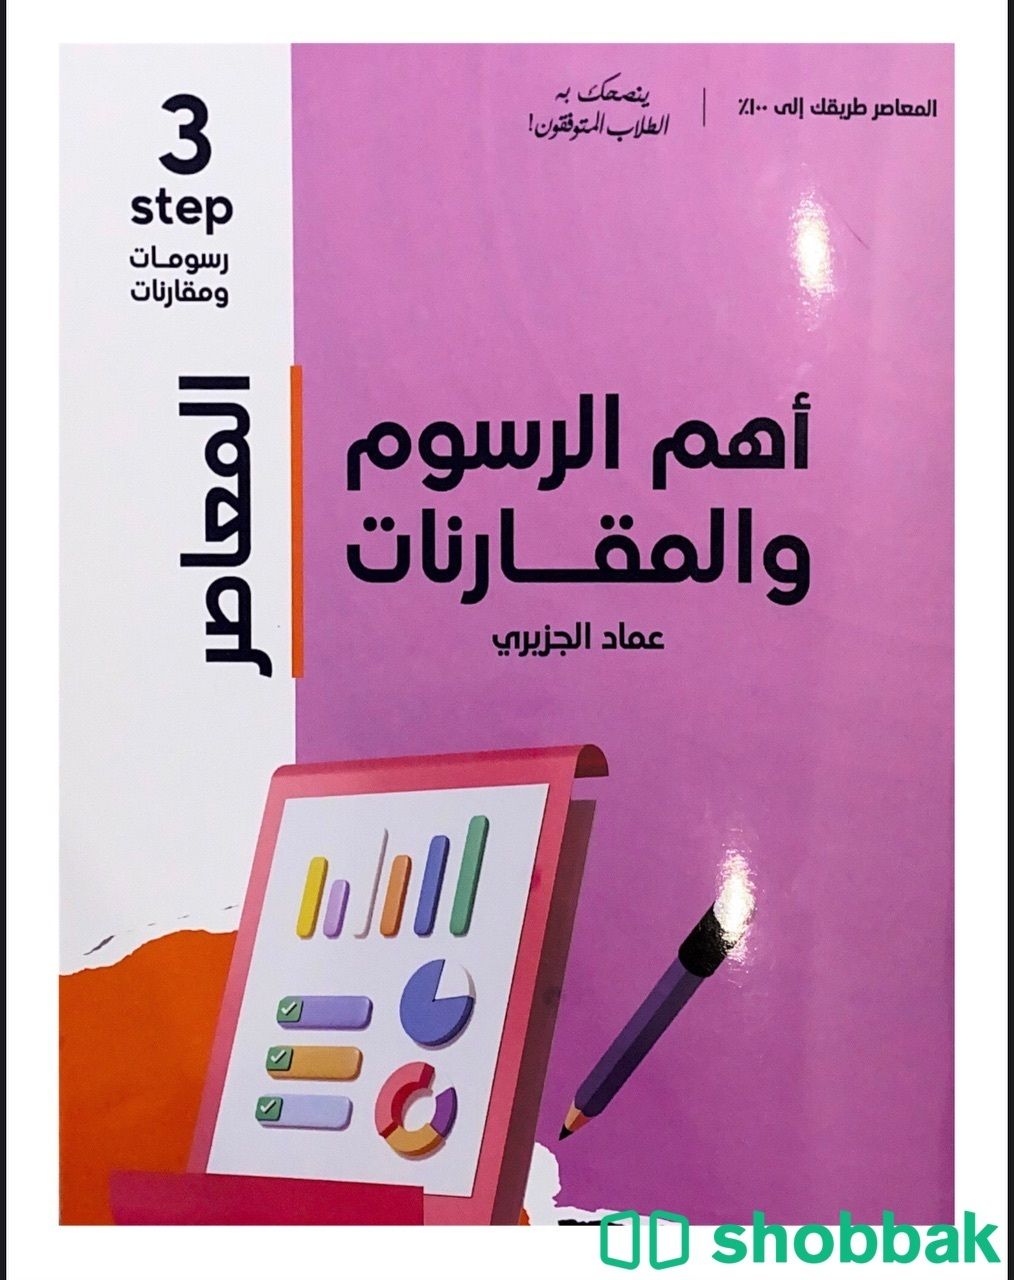 كتاب معاصر 7 و 120 و الرسومات والمقارانات3 Shobbak Saudi Arabia